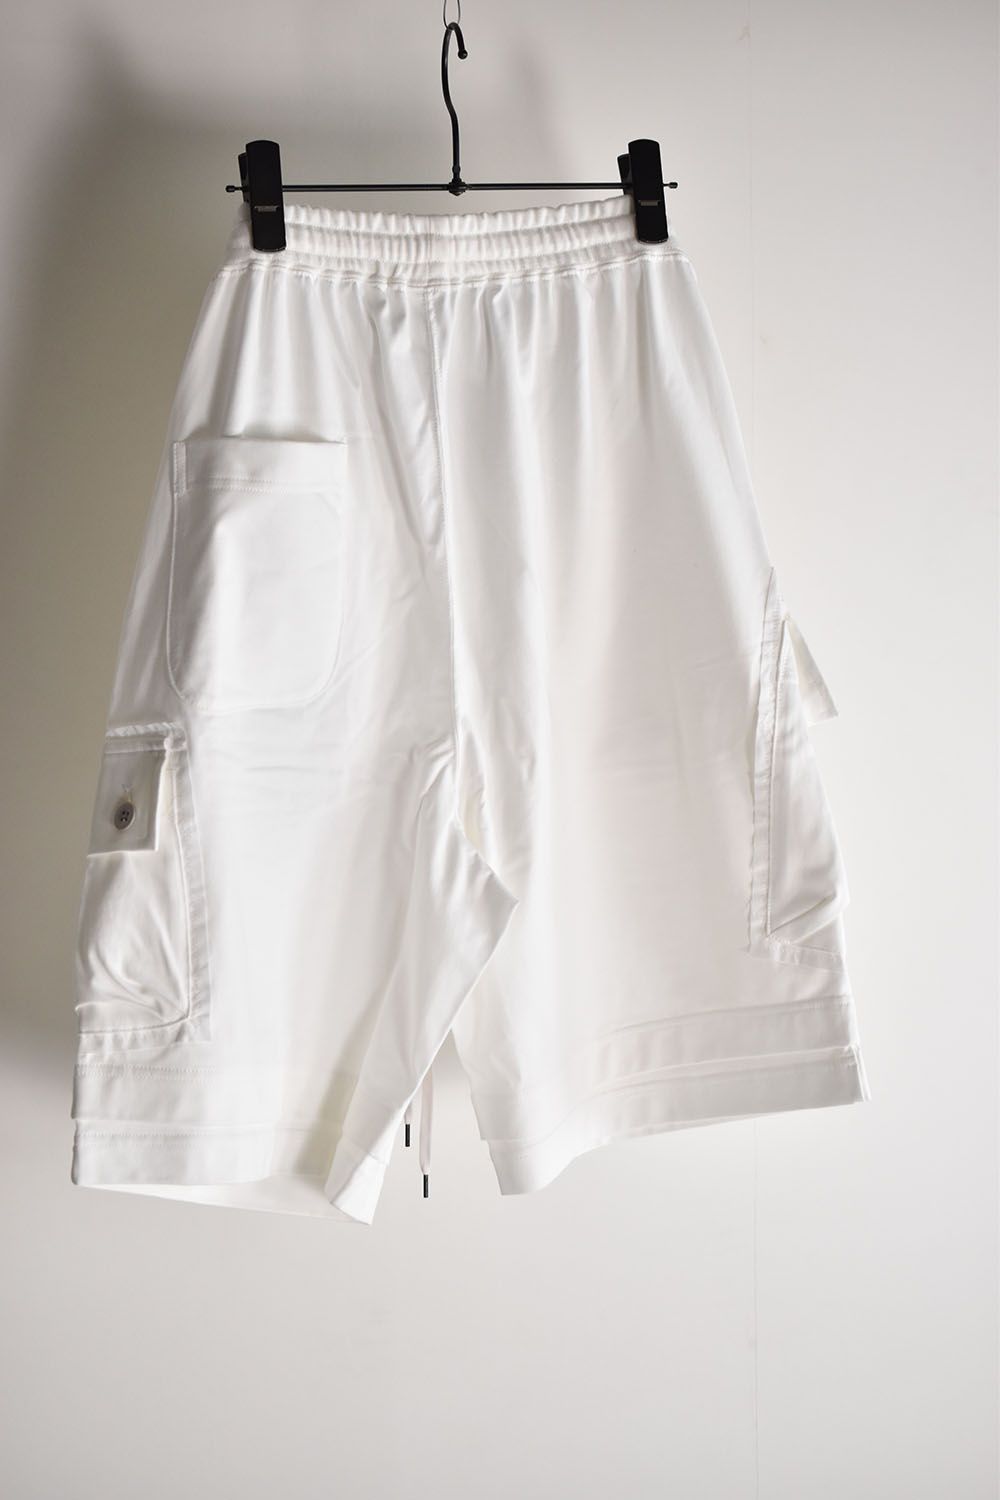 Painstitch Shorts"Off White"/天竺ショーツ"オフホワイト"